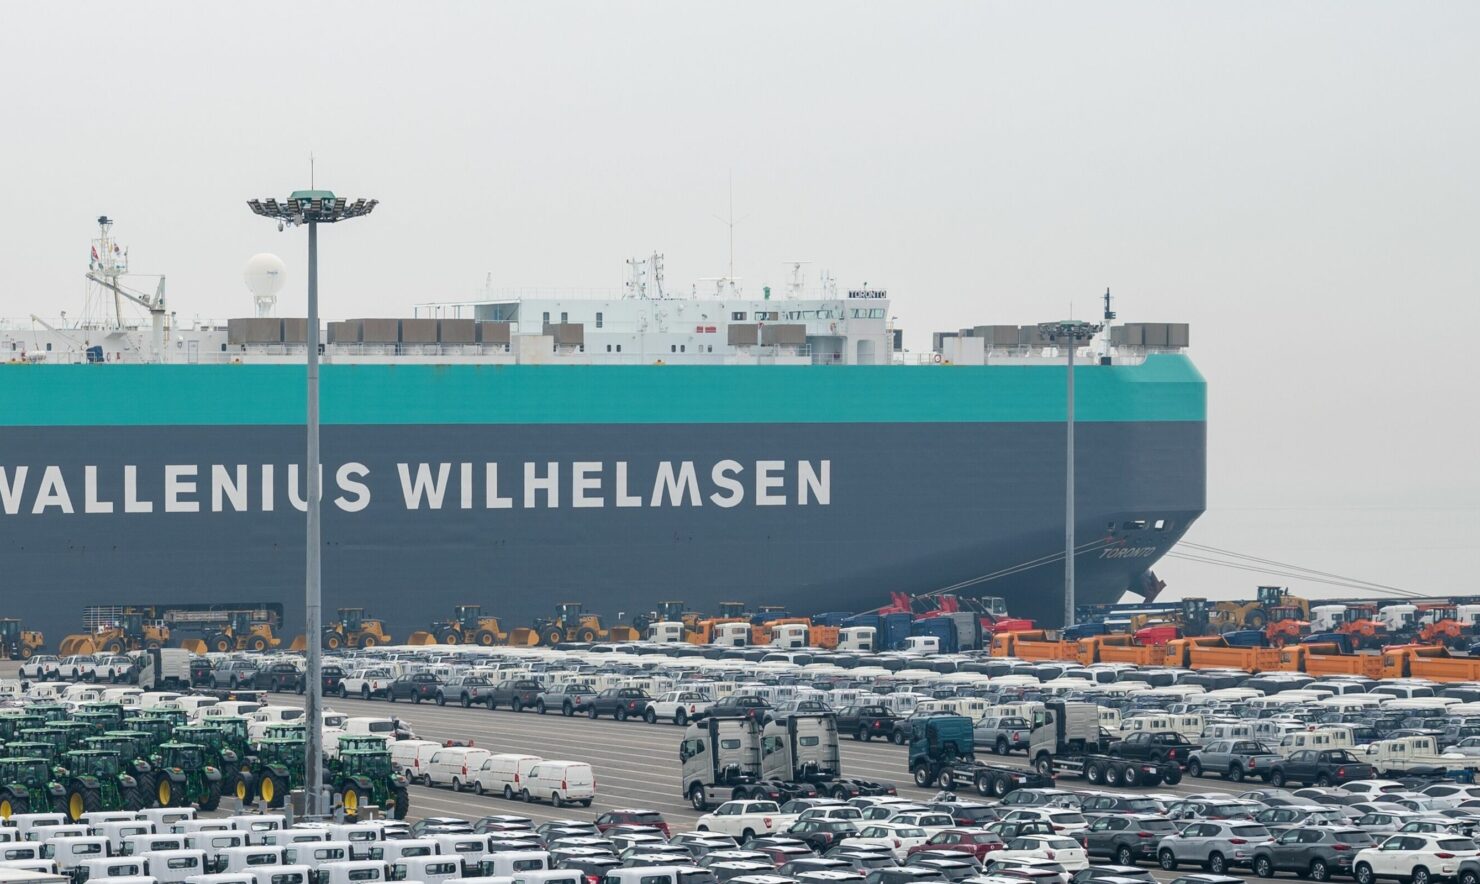 Ship from Wallenius Wilhelmsen